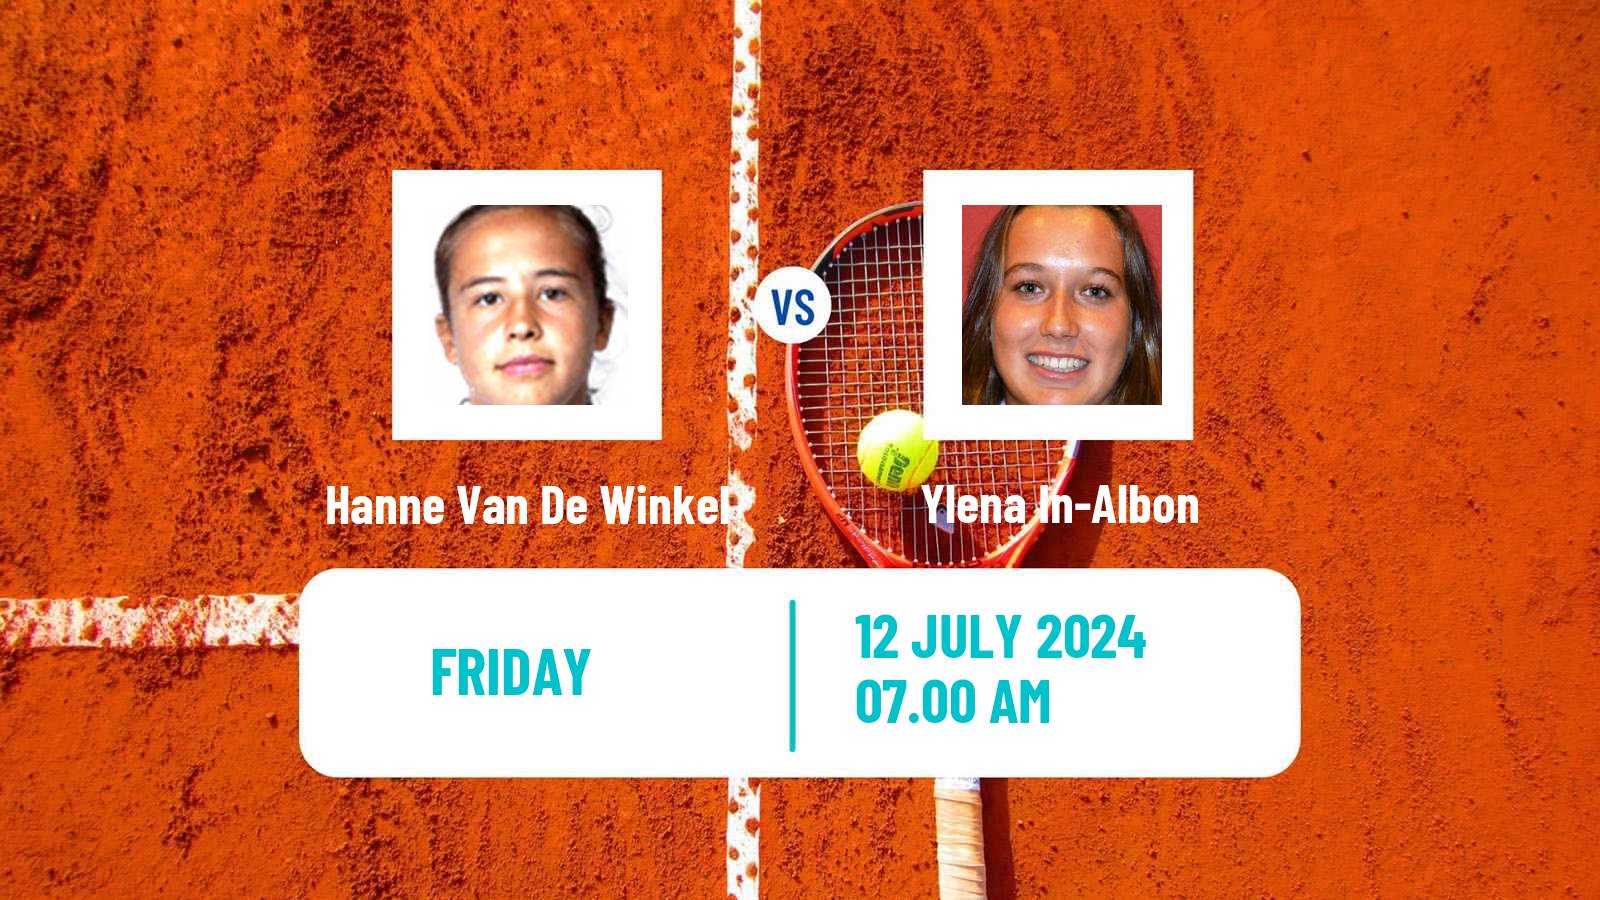 Tennis ITF W35 Aschaffenburg Women Hanne Van De Winkel - Ylena In-Albon